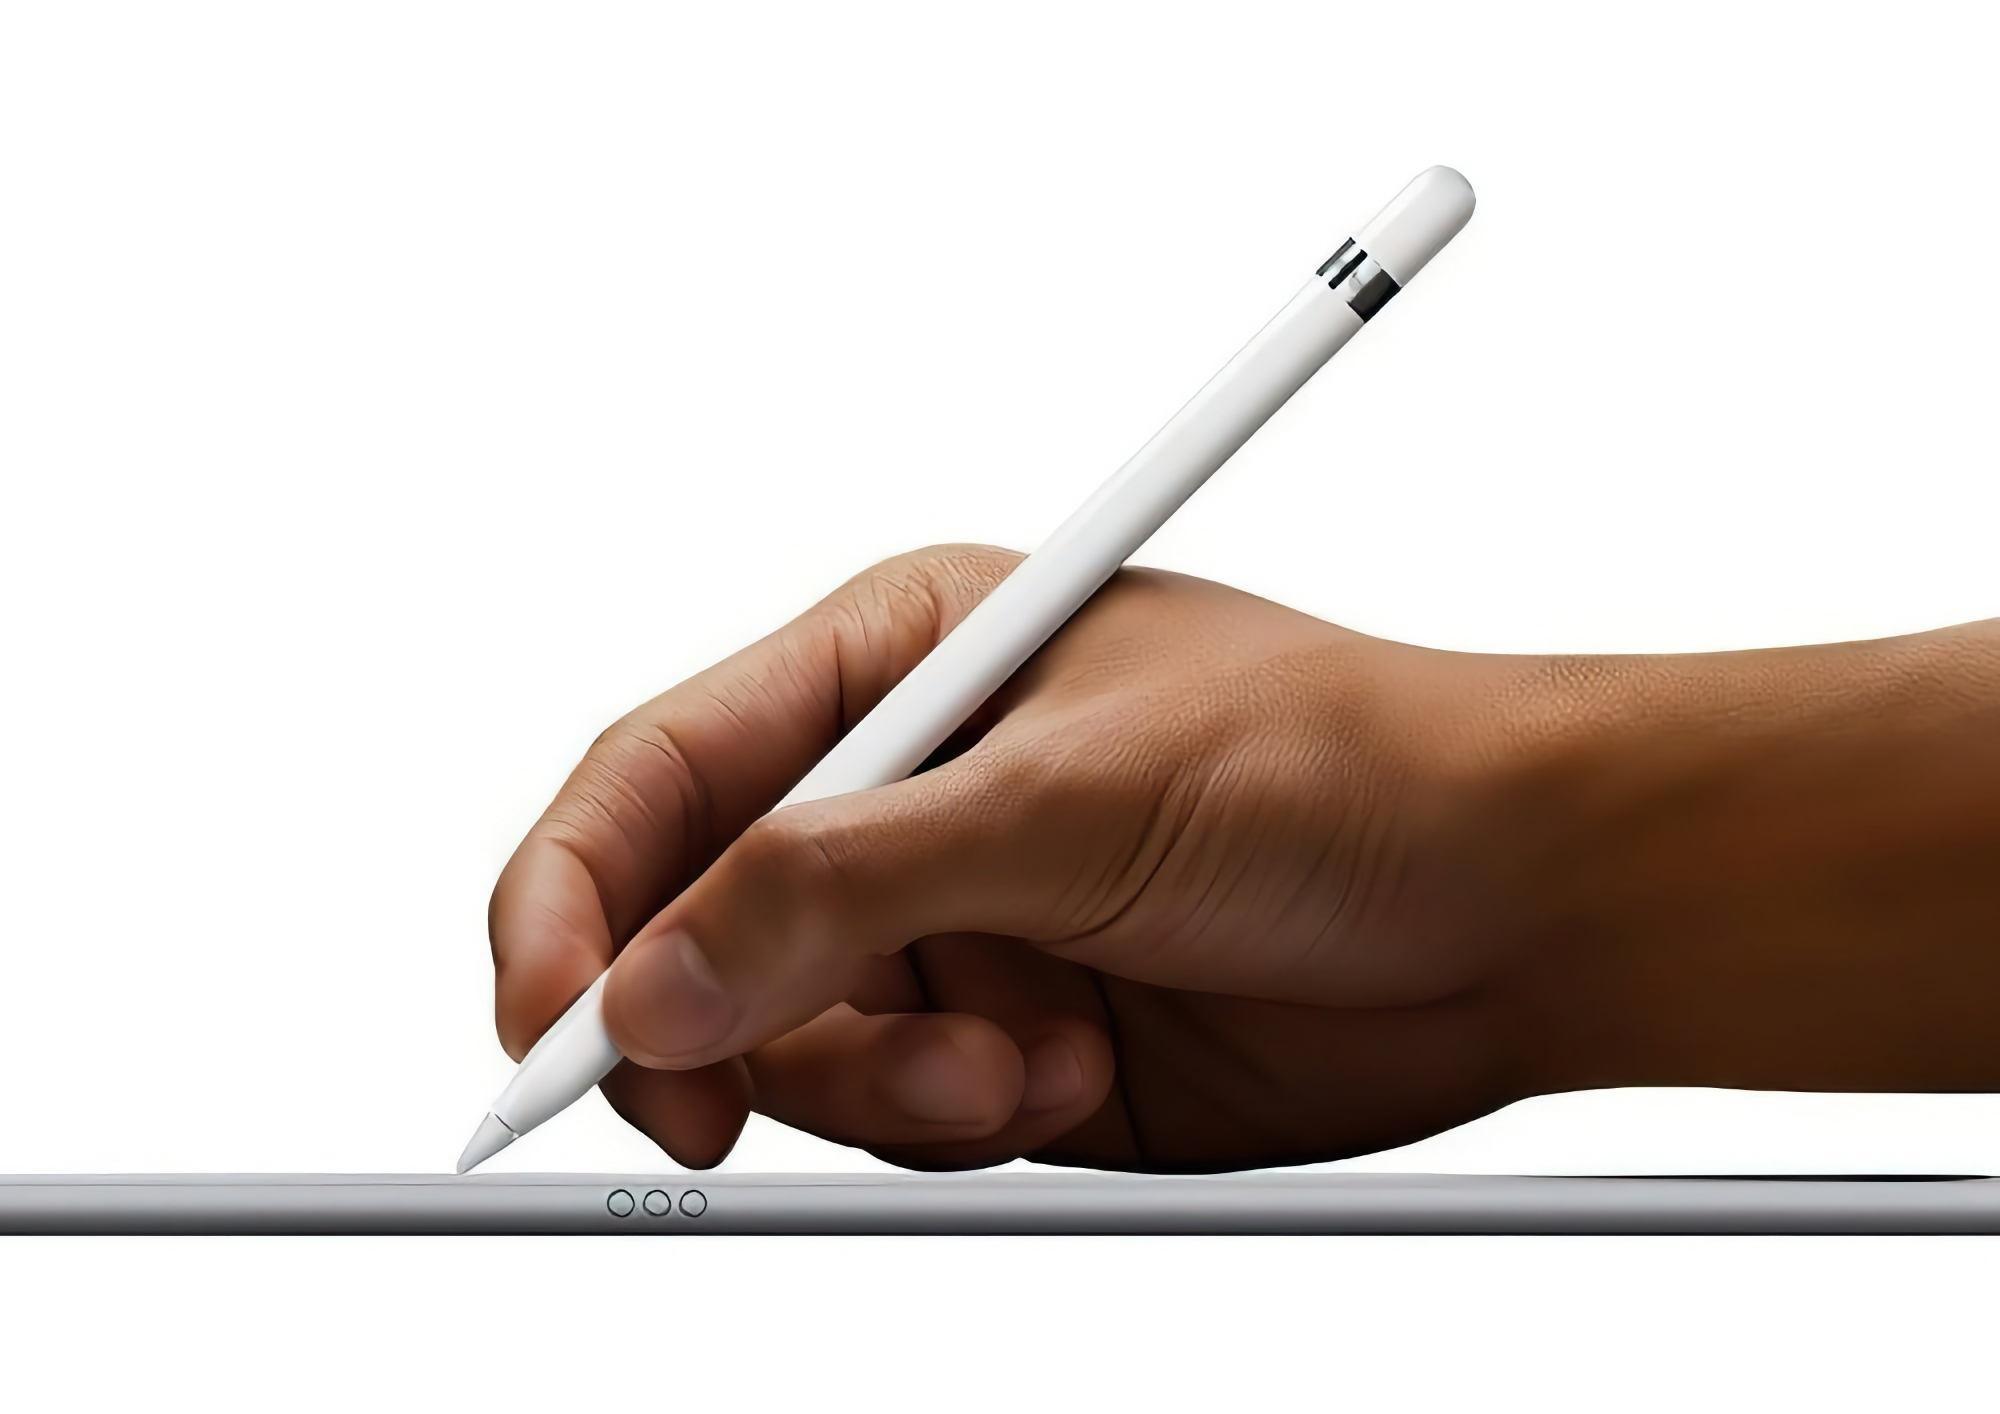 Plotka: Apple zaprezentuje Apple Pencil 3 z nowymi funkcjami w tym tygodniu zamiast nowych iPadów